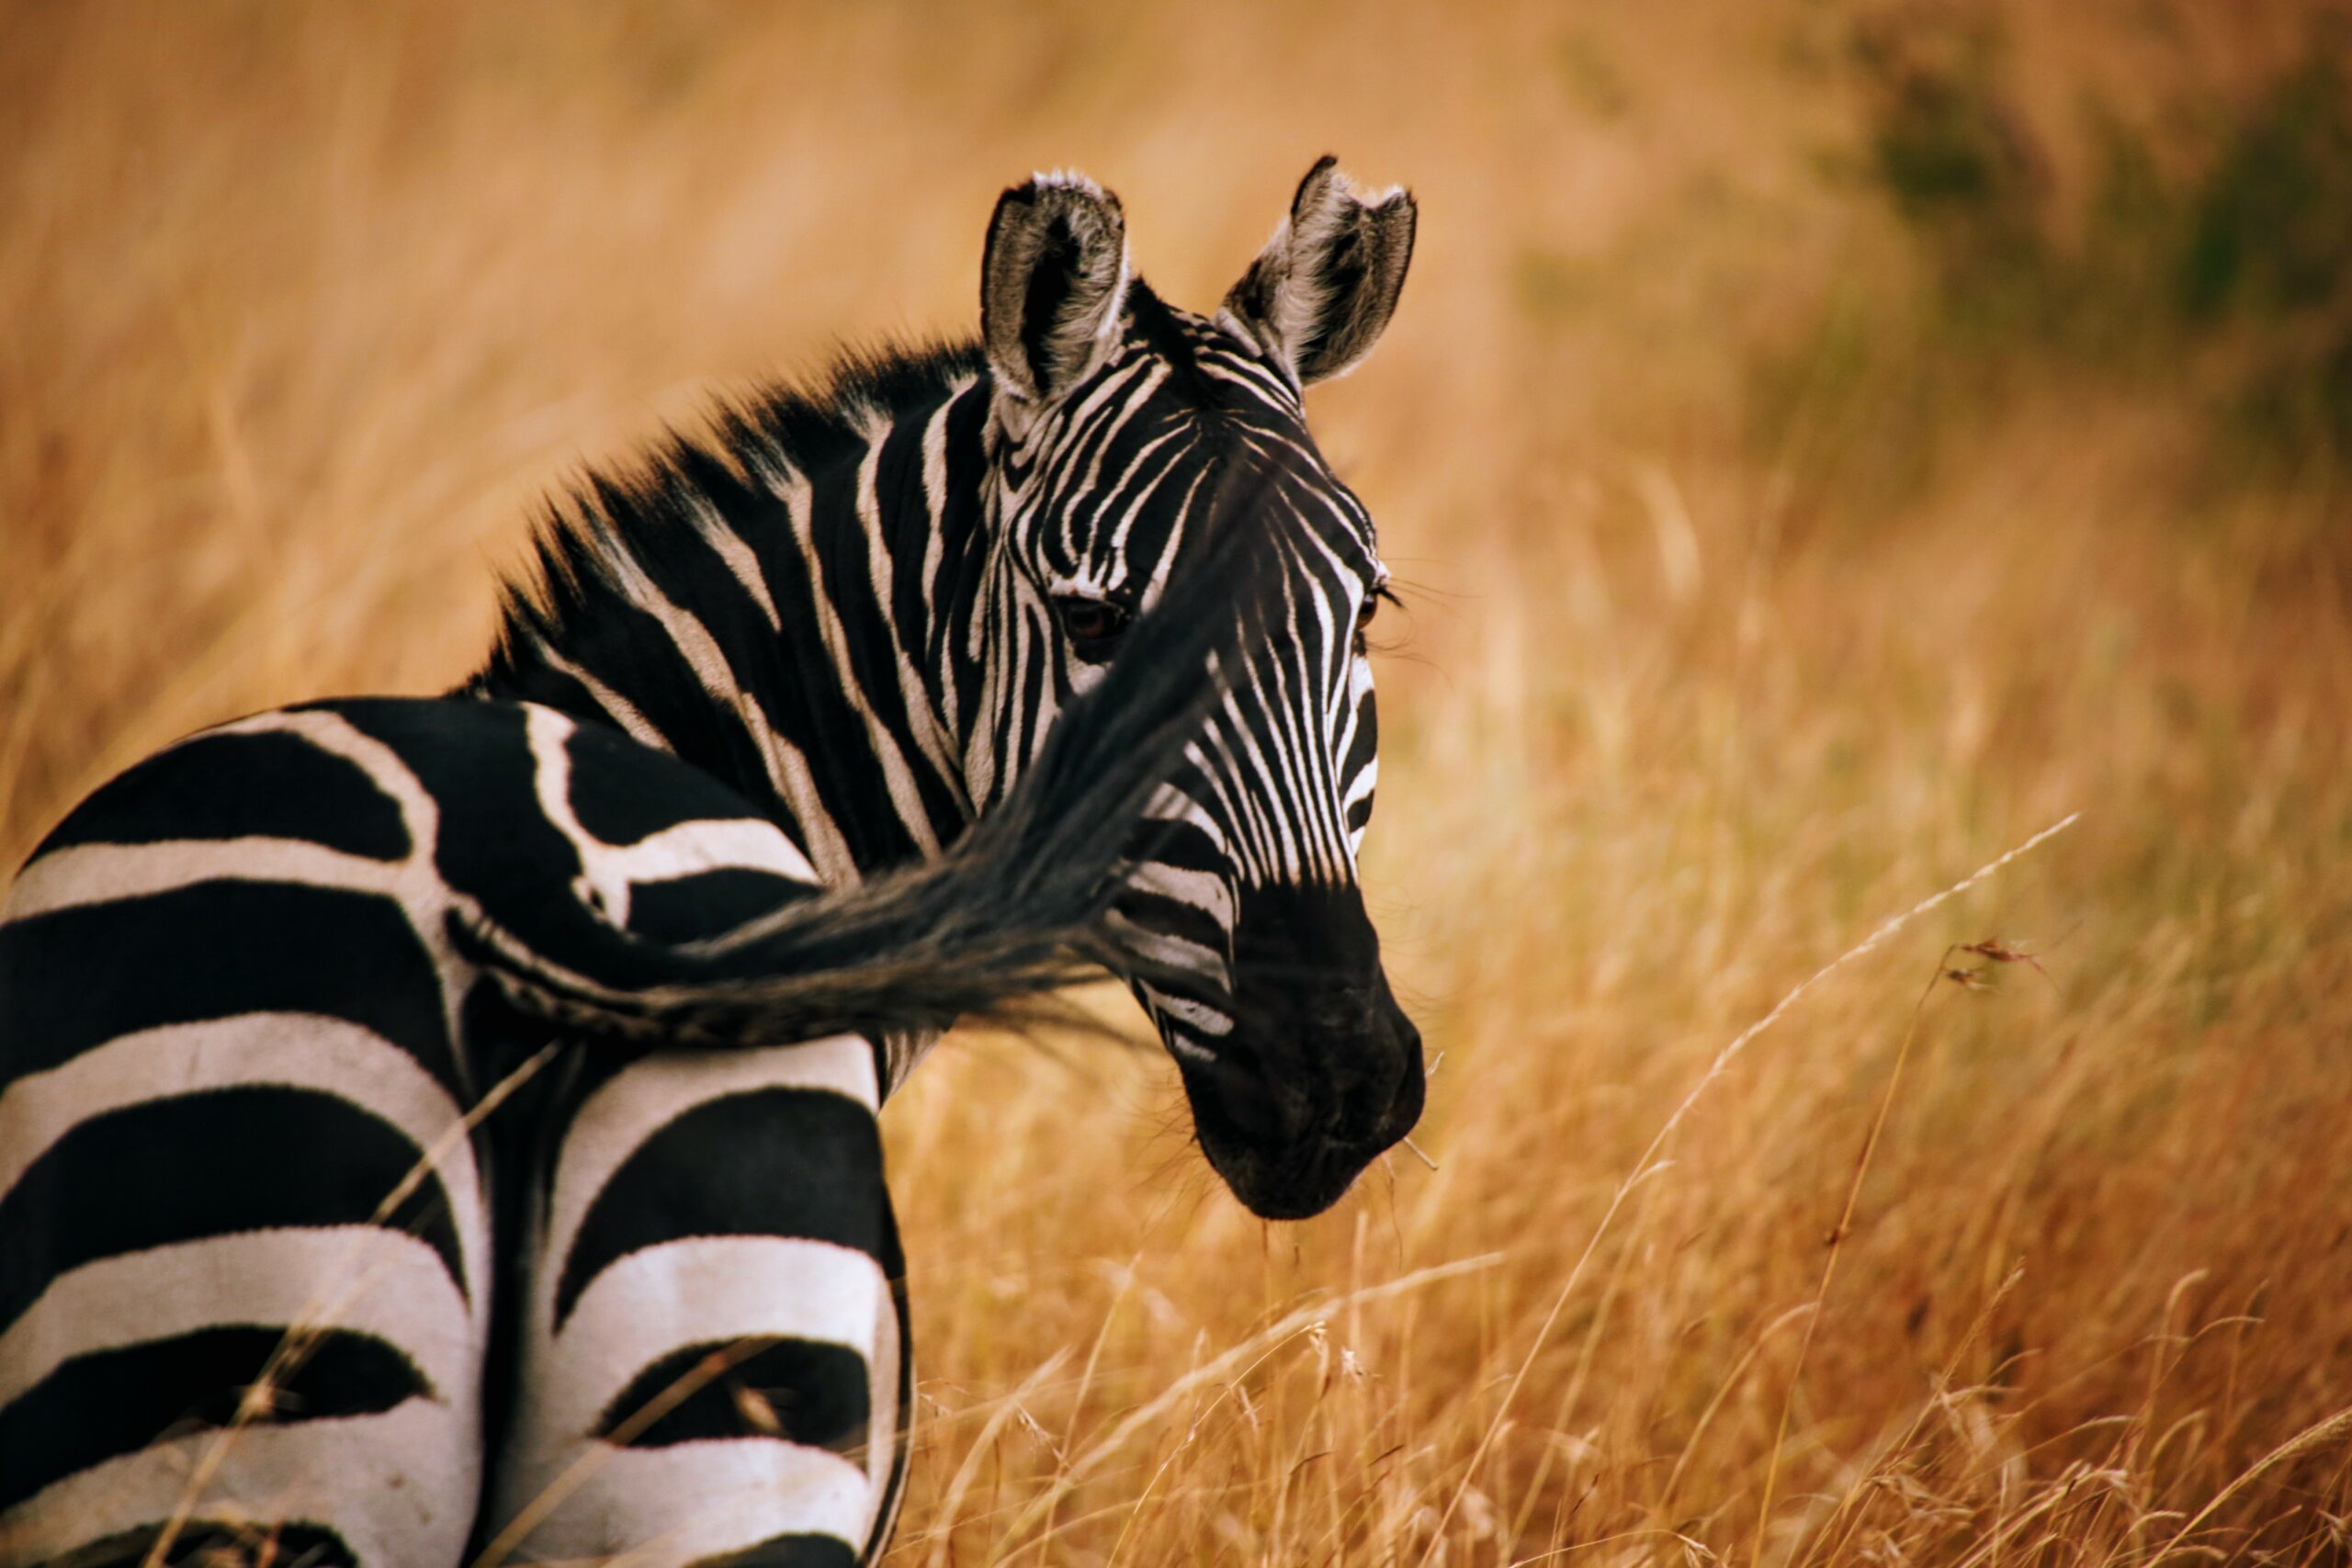 New Scanner Tracks Zebras’ Built-In Bar Codes